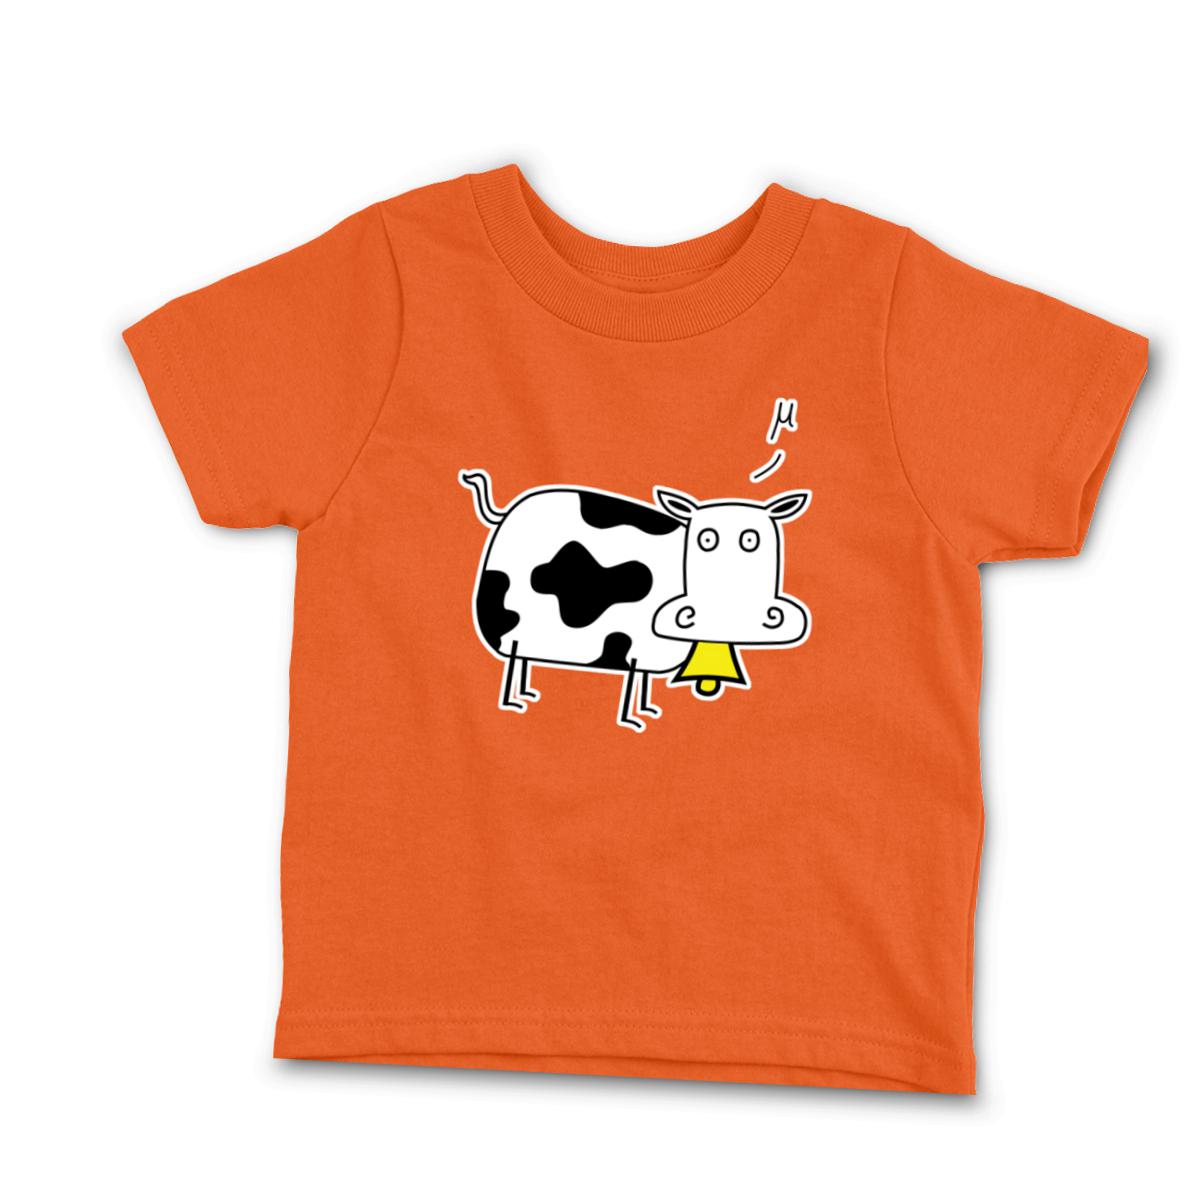 Mu Cow Toddler Tee 56T orange